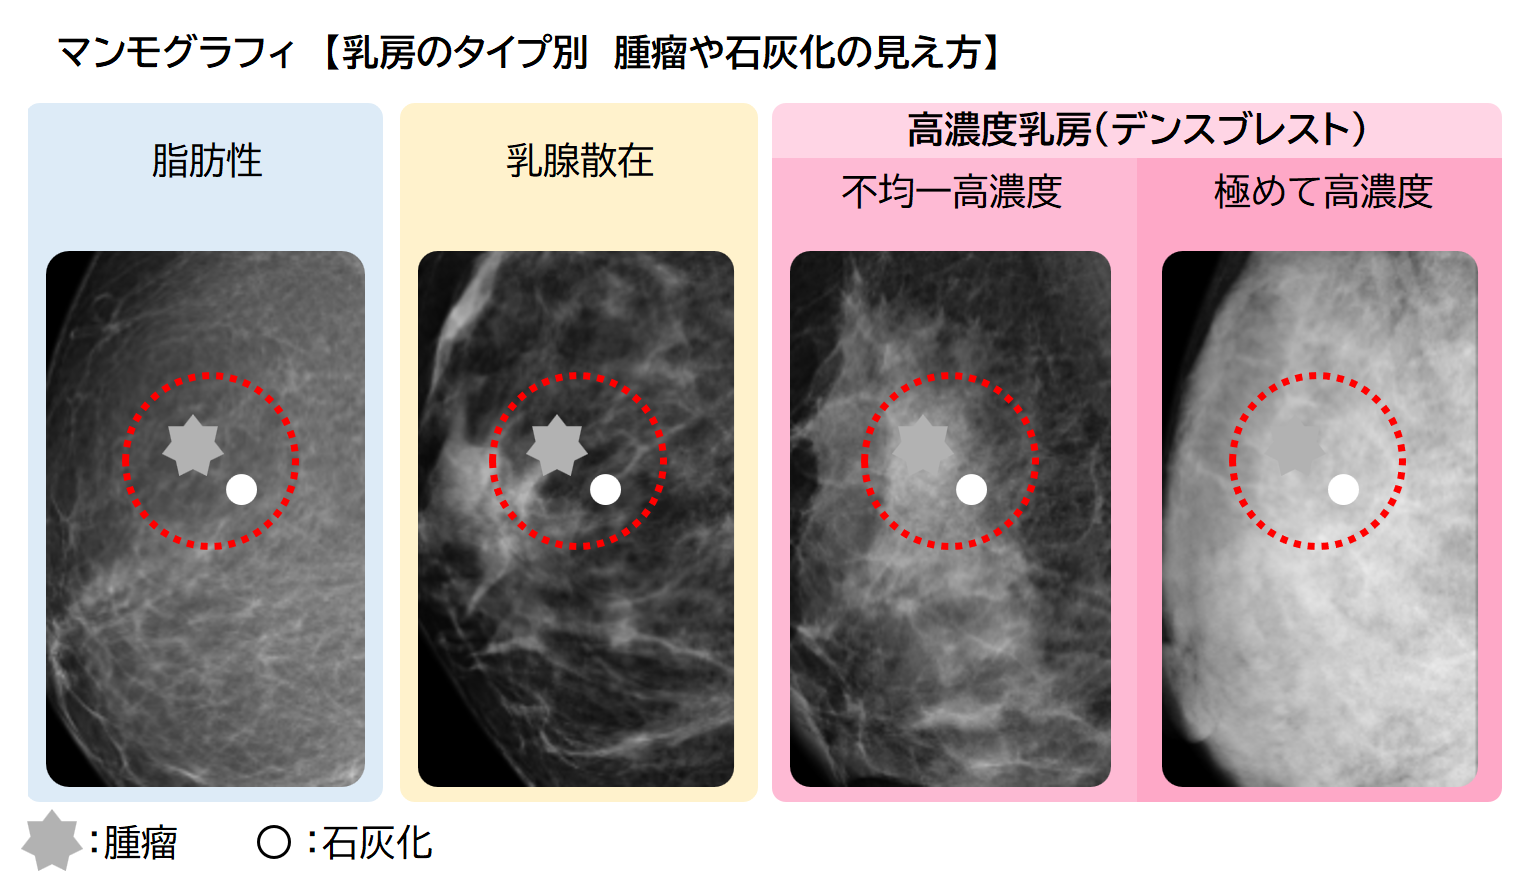 乳がん検診で異常や所見があり、精密検査や再検査となった方へ | 名古屋東女性のクリニック